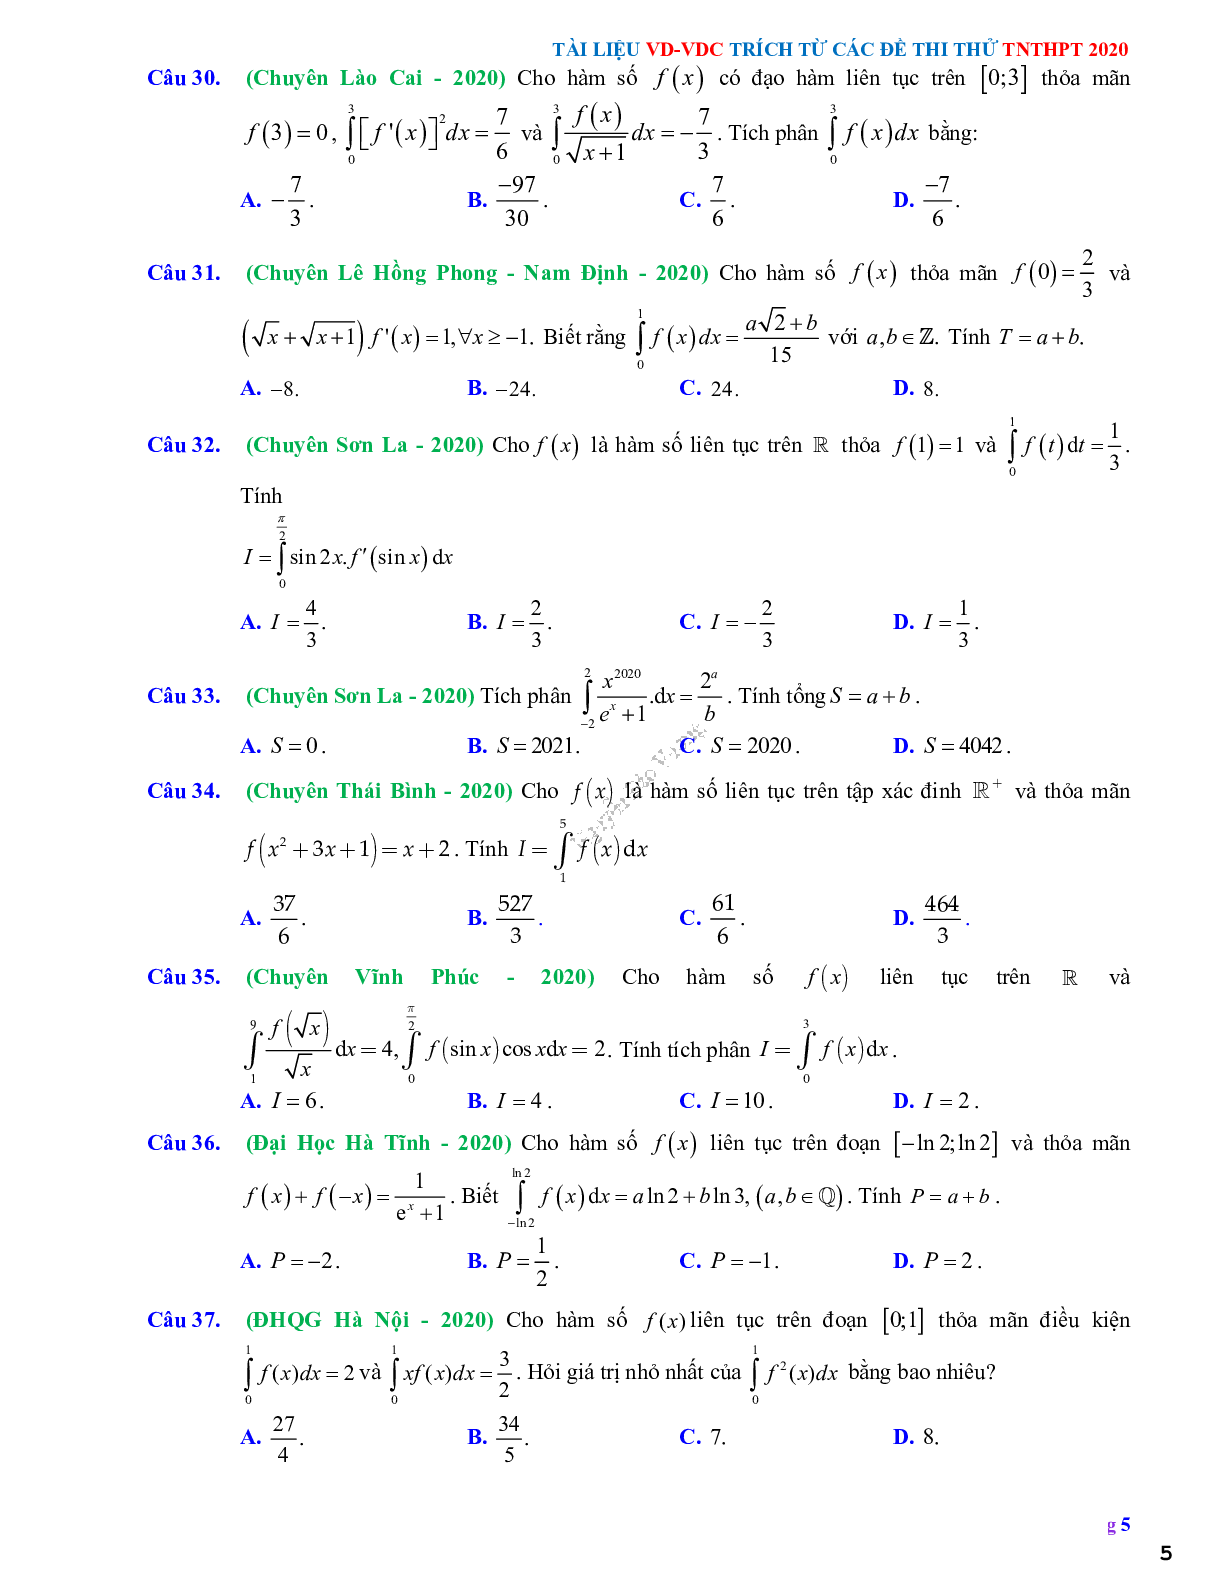 68 Bài tập vận dụng nguyên hàm tích phân và ứng dụng - có đáp án và lời giải (trang 5)